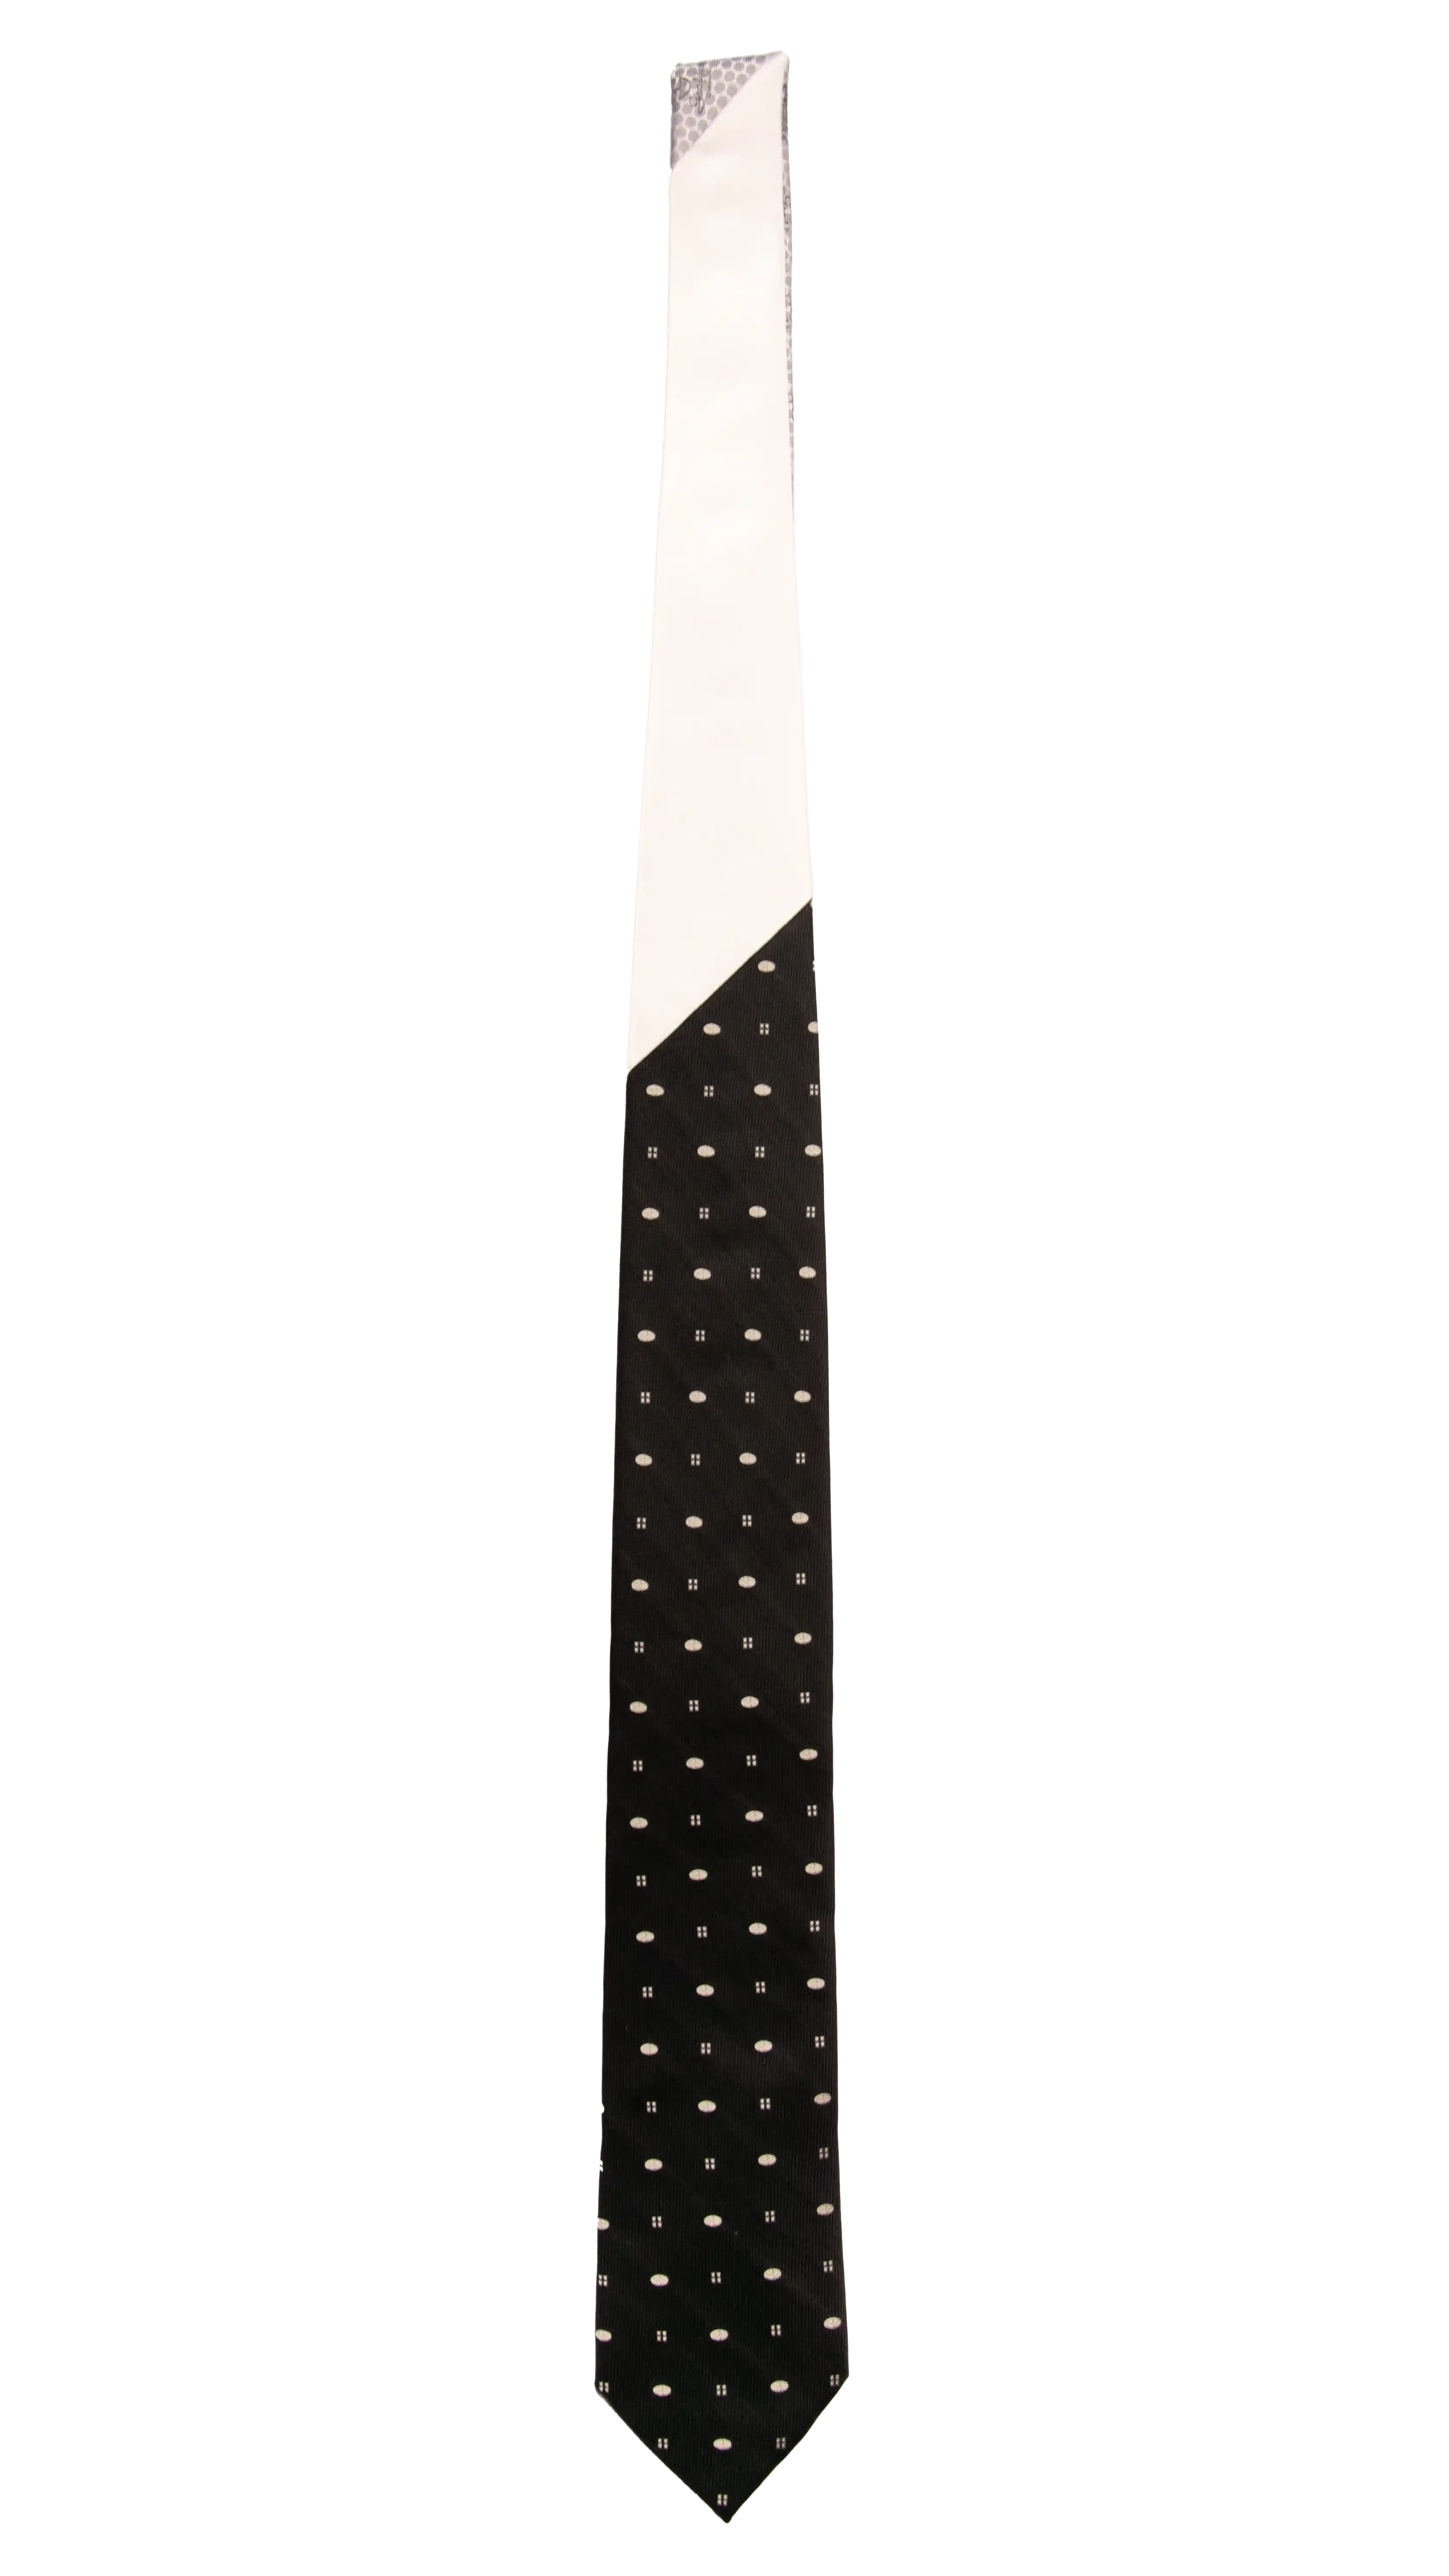 Cravatta Cerimonia Nera Fantasia Color Champagne Nodo in Contrasto Bianco Perla Made in Italy Graffeo Cravatte Intera